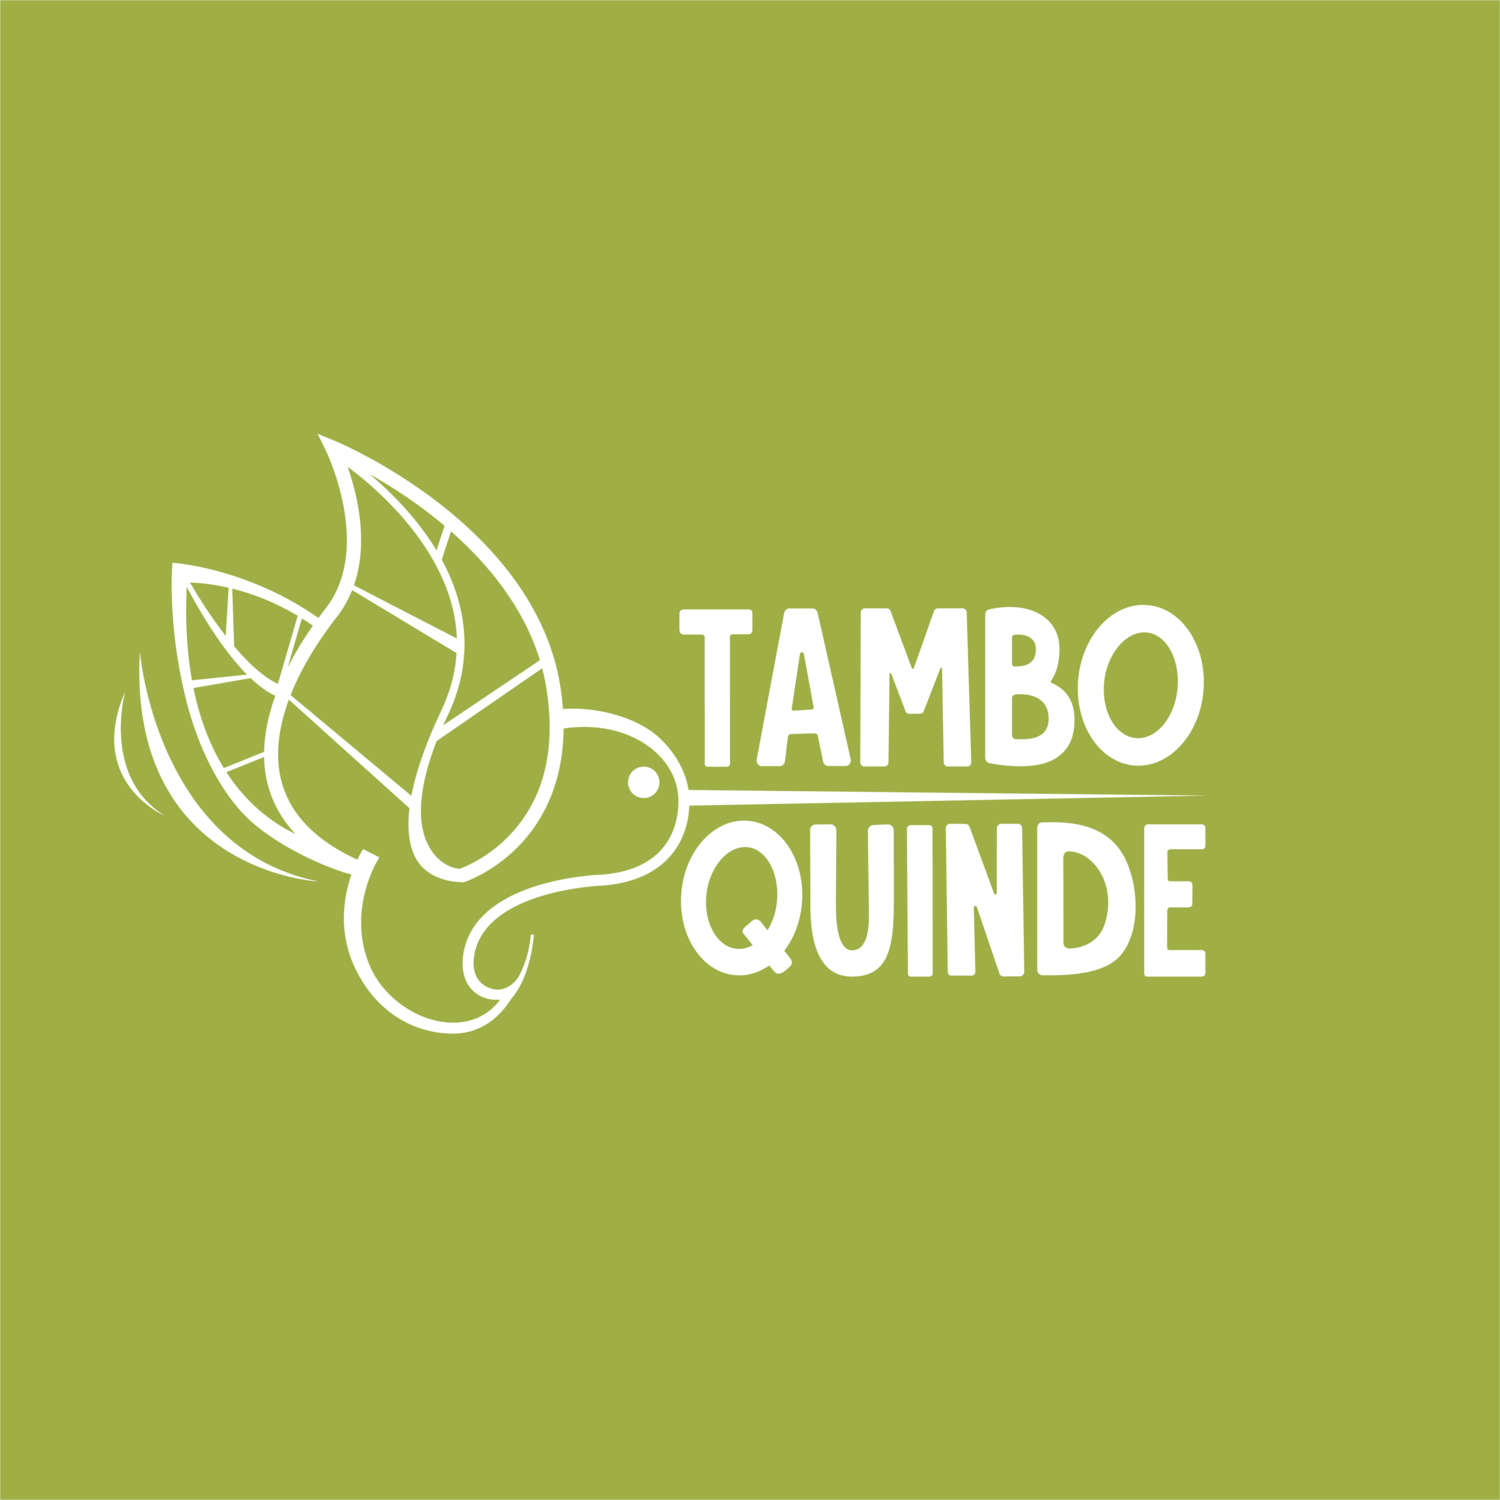 Tambo Quinde